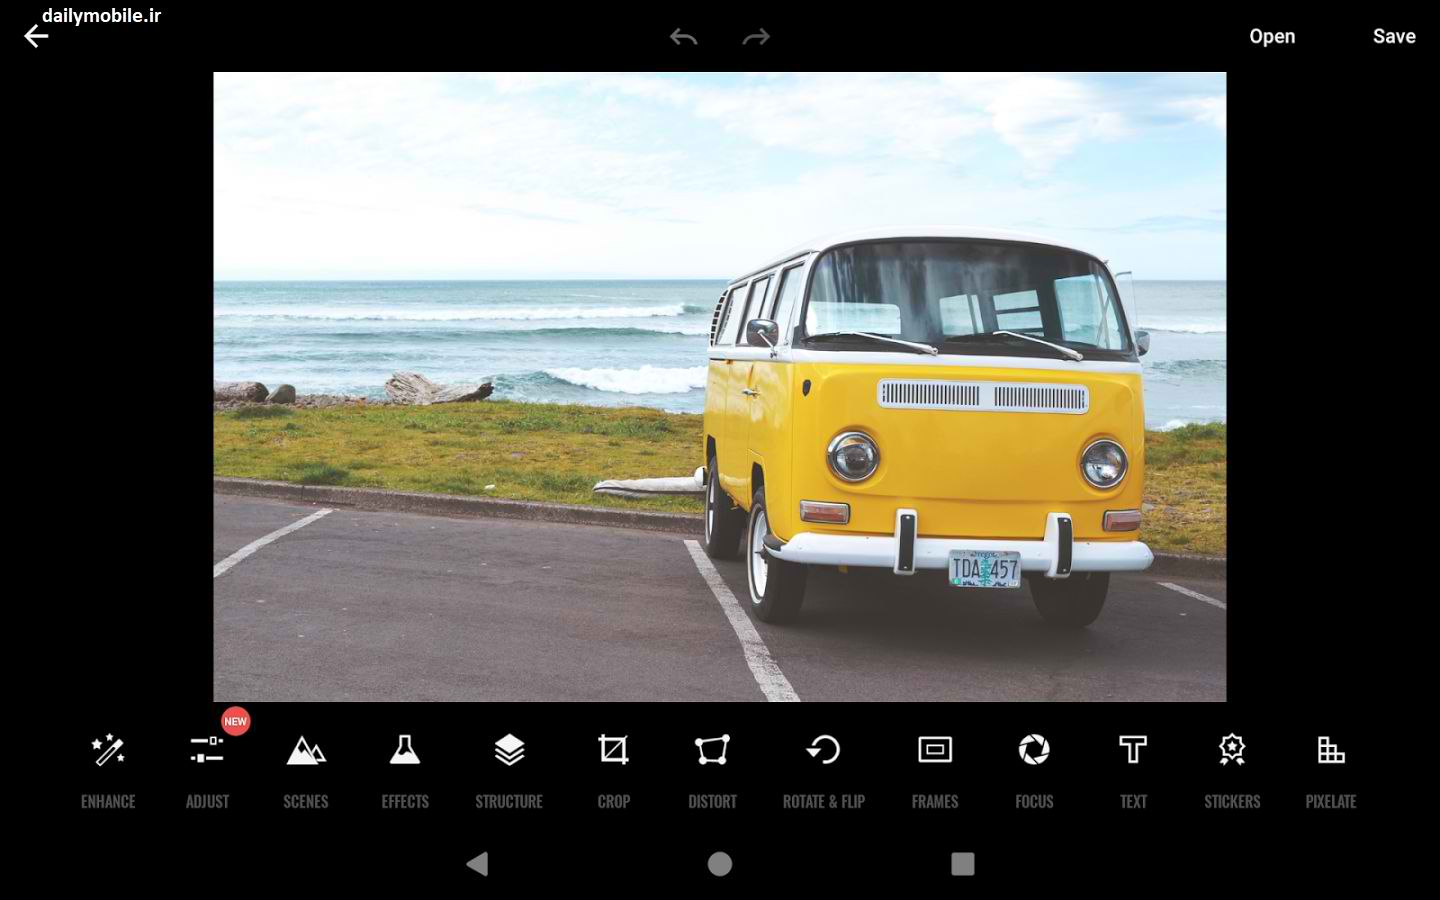 دانلود نرم افزار ویرایش عکس فوتور برای اندروید Fotor Photo Editor Premium